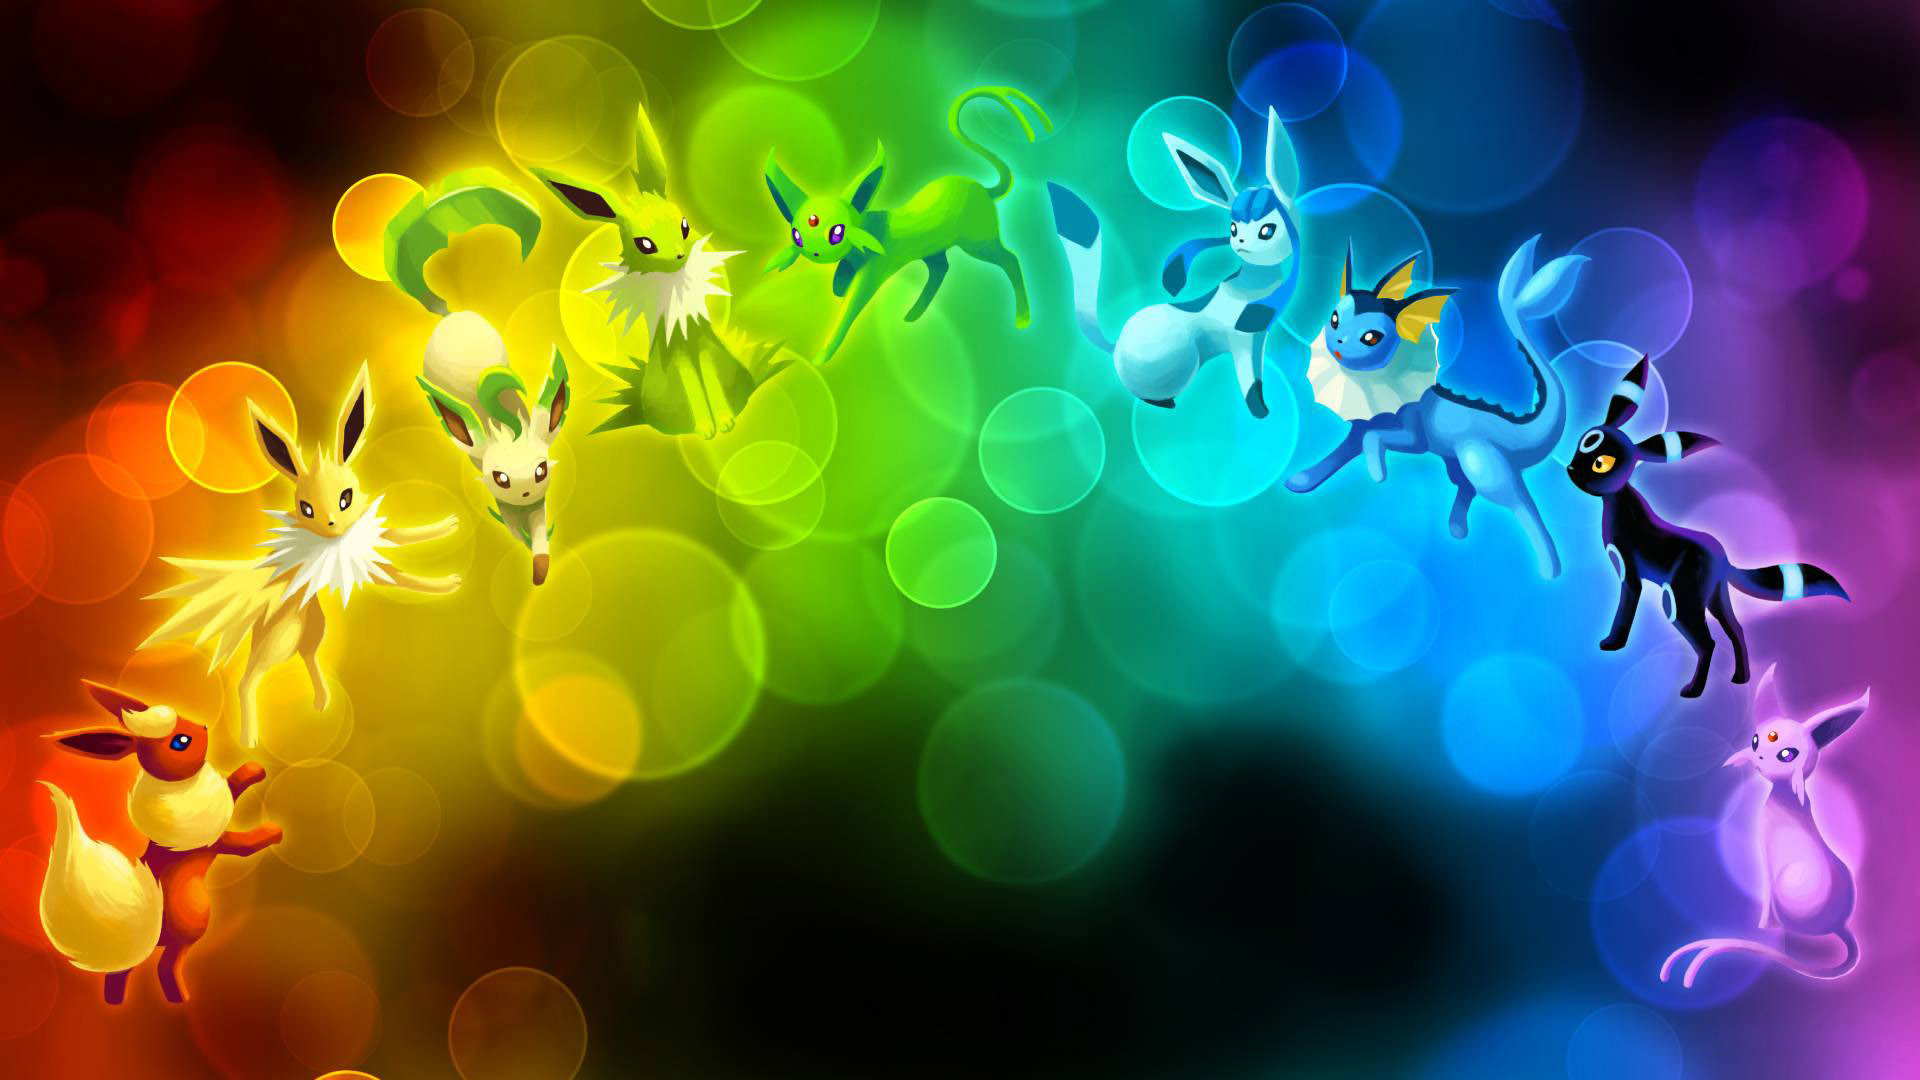 Live Wallpaper Pokemon Eevee Evolution FREE Anime Live 19201080 Eeveelutions Wallpapers 39